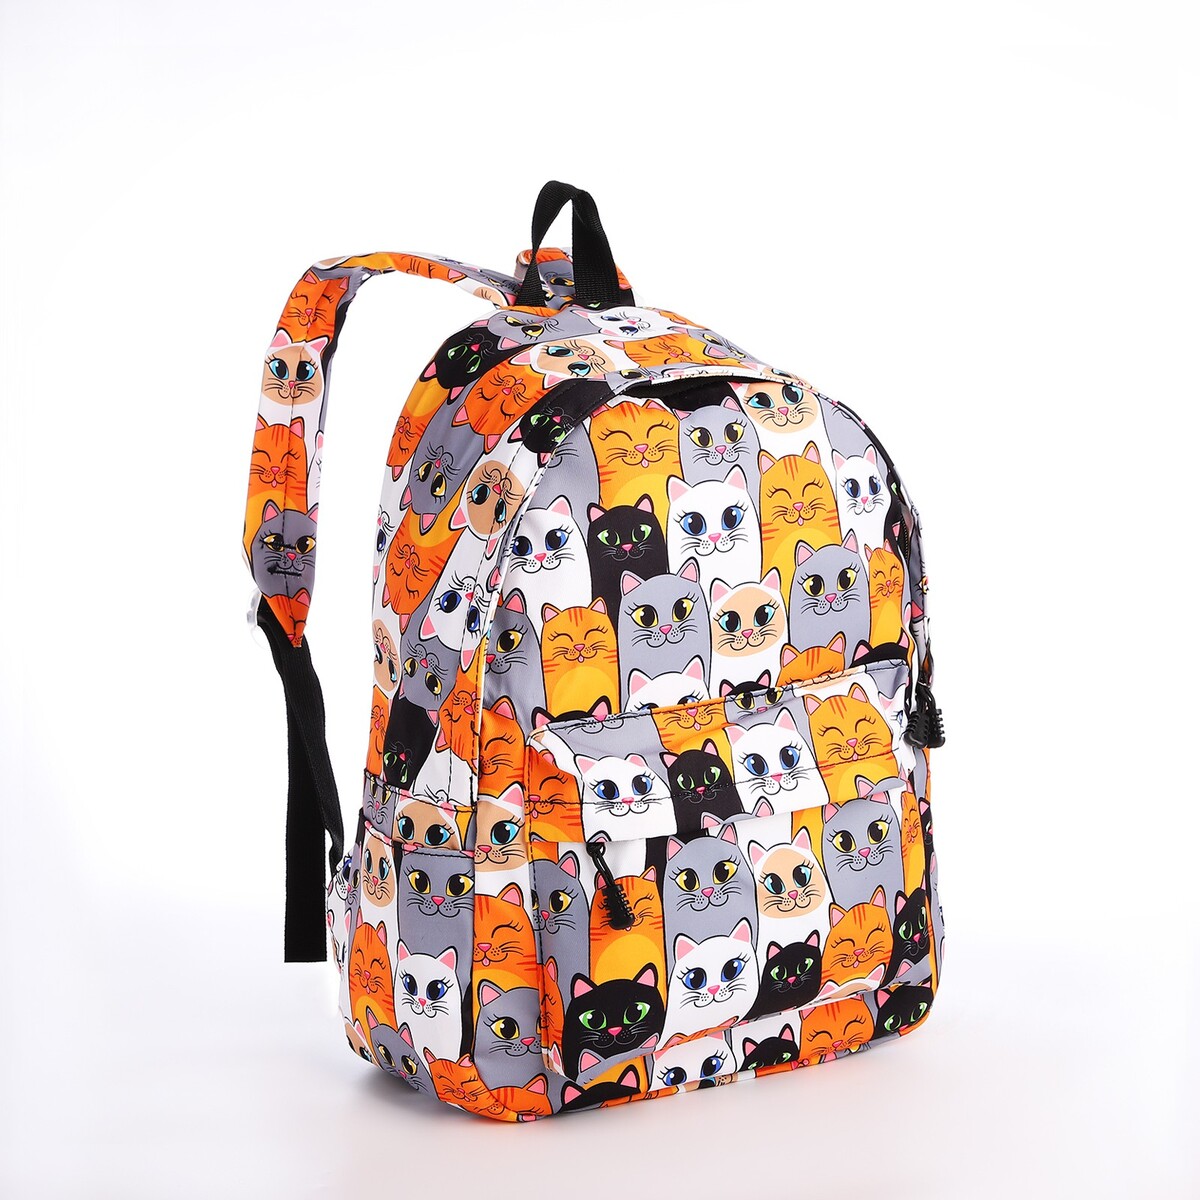 Рюкзак школьный из текстиля на молнии, 4 кармана, кошелек, цвет серый/оранжевый рюкзак школьный из текстиля на молнии 4 кармана кошелек серый оранжевый